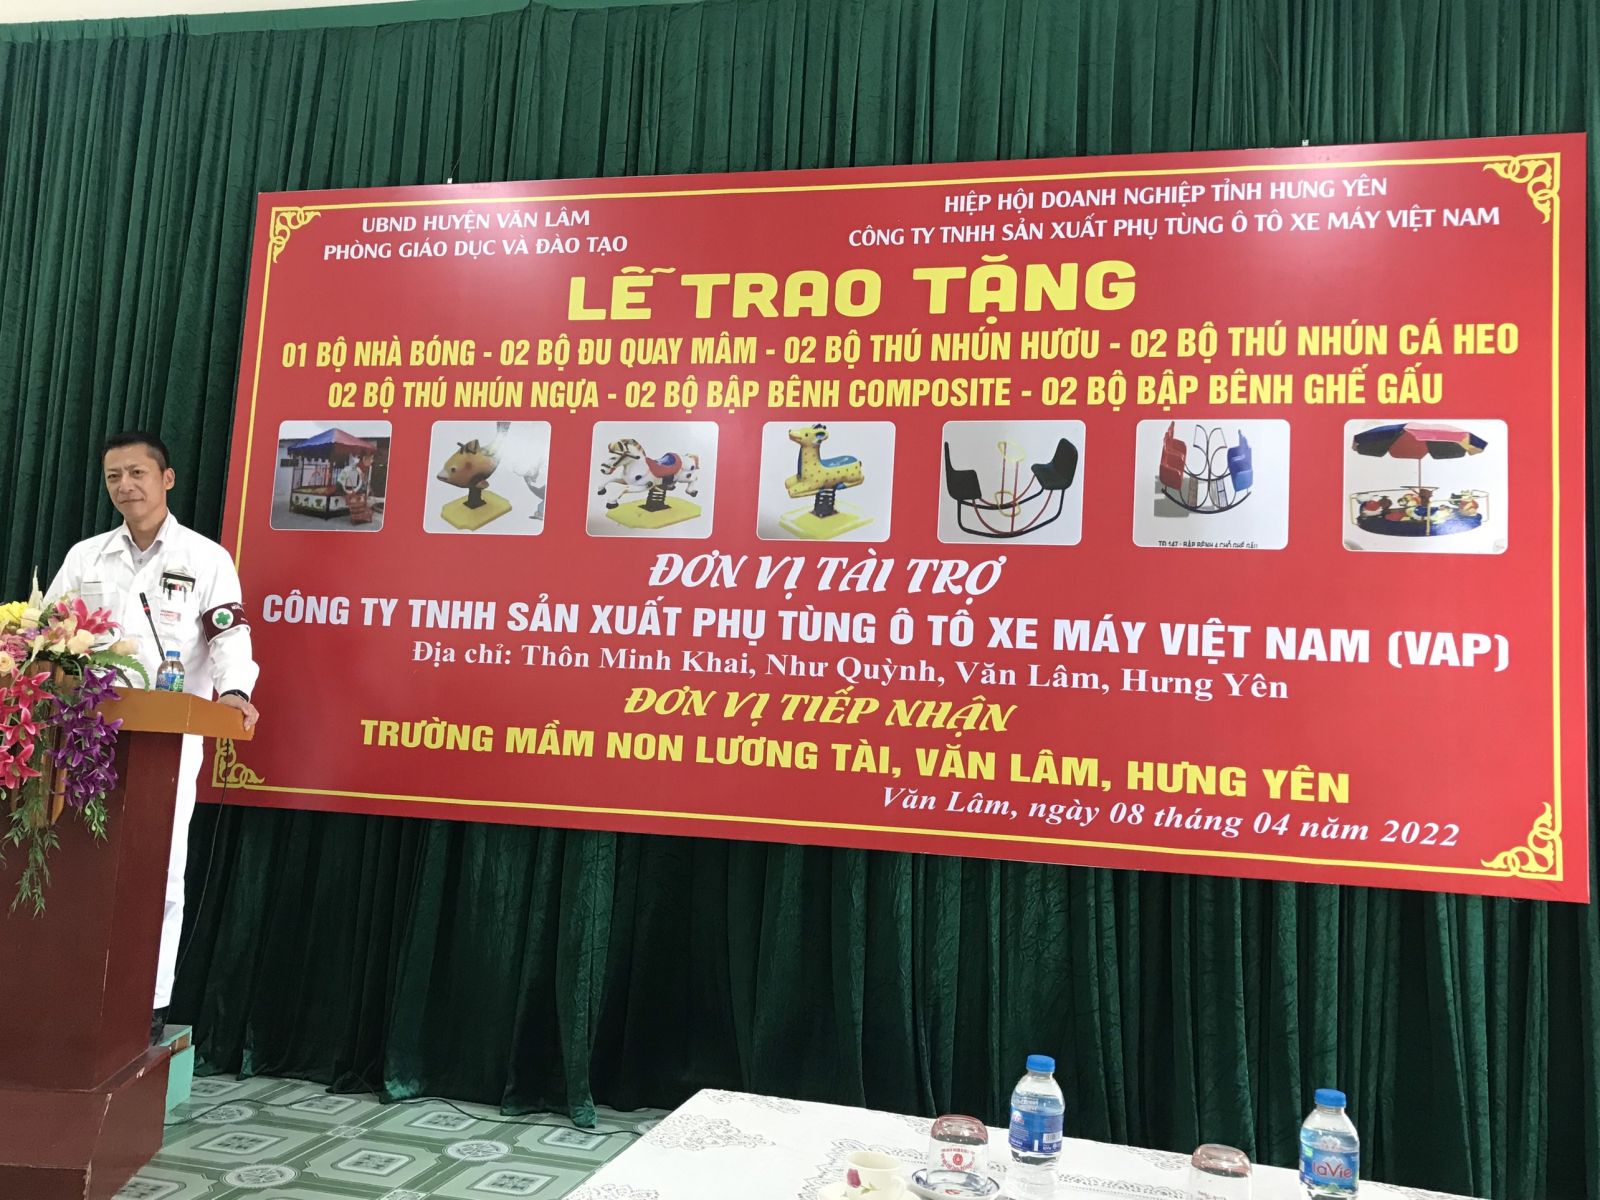 Công ty TNHH sản xuất phụ tùng ô tô xe máy Việt Nam (VAP) trao tặng trang thiết bị dạy học và đồ chơi cho trường THCS xã Hồng Vân, huyện Ân Thi và trường Mầm non xã Lương Tài, huyện Văn Lâm